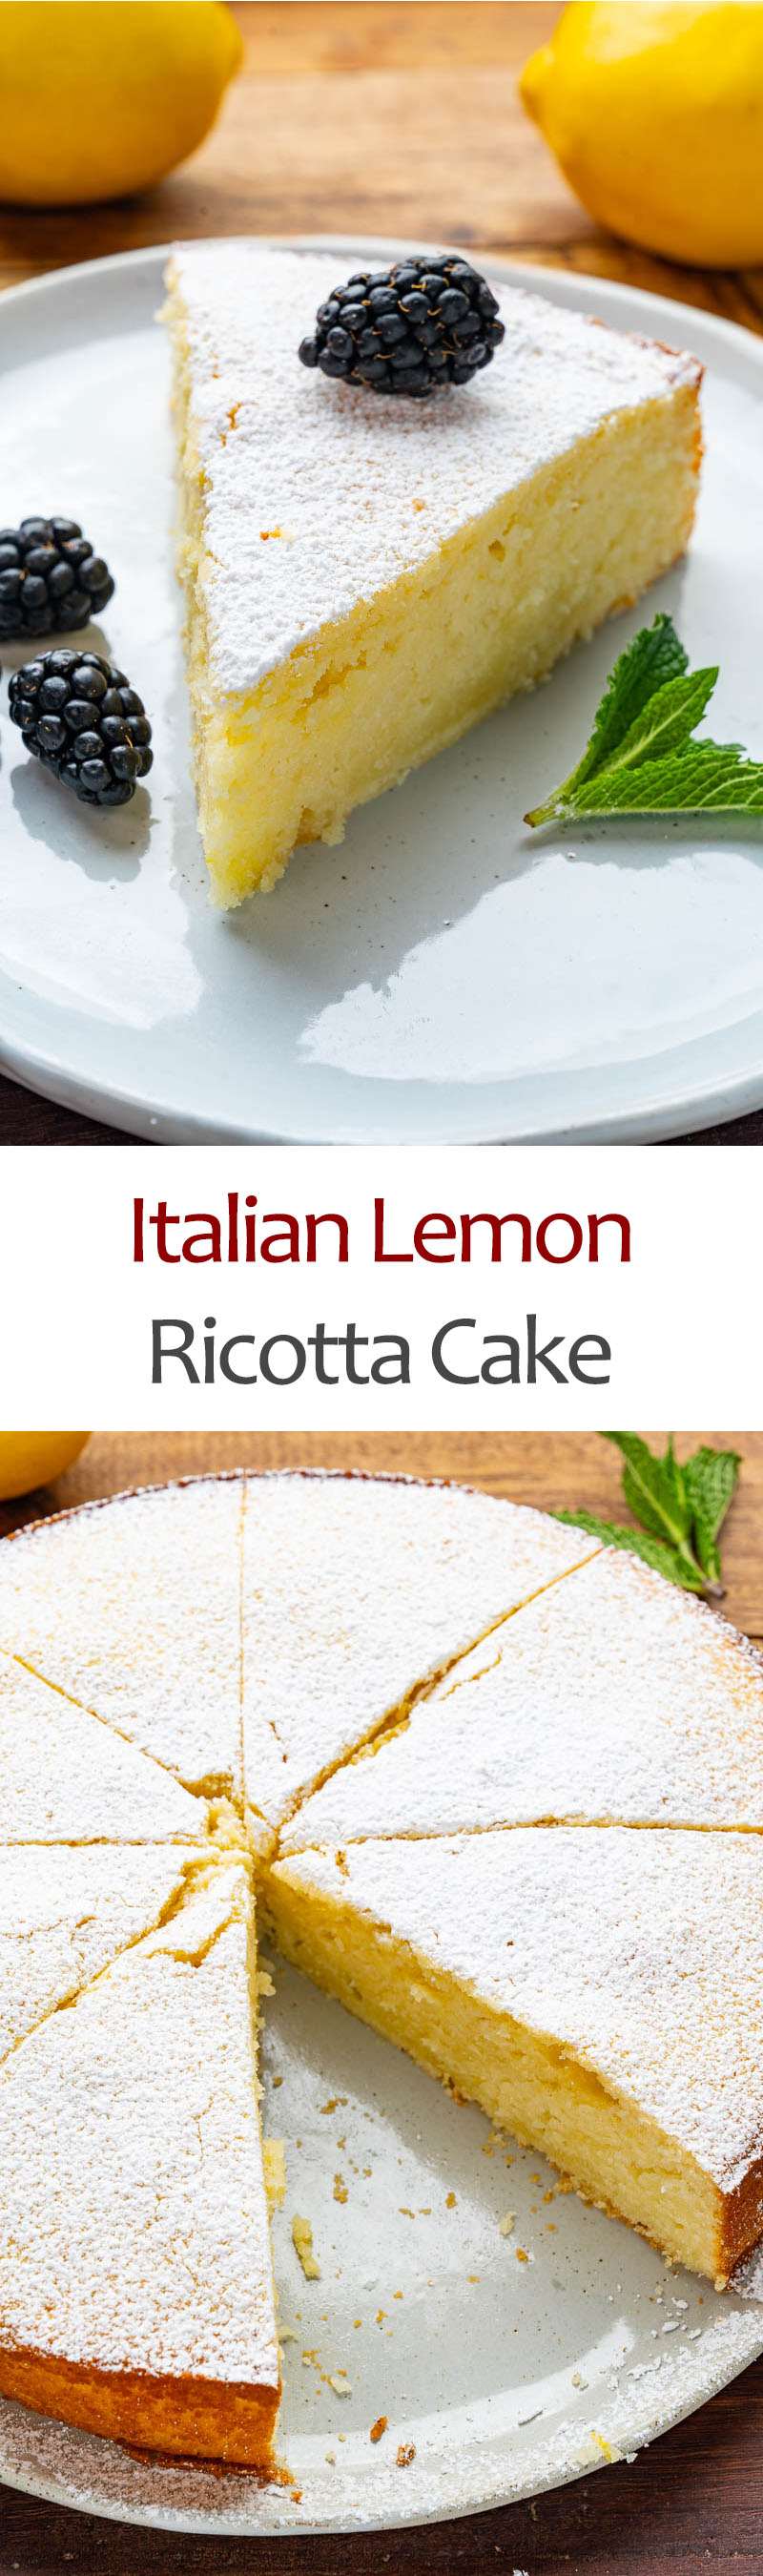 Italian Lemon Ricotta Cake